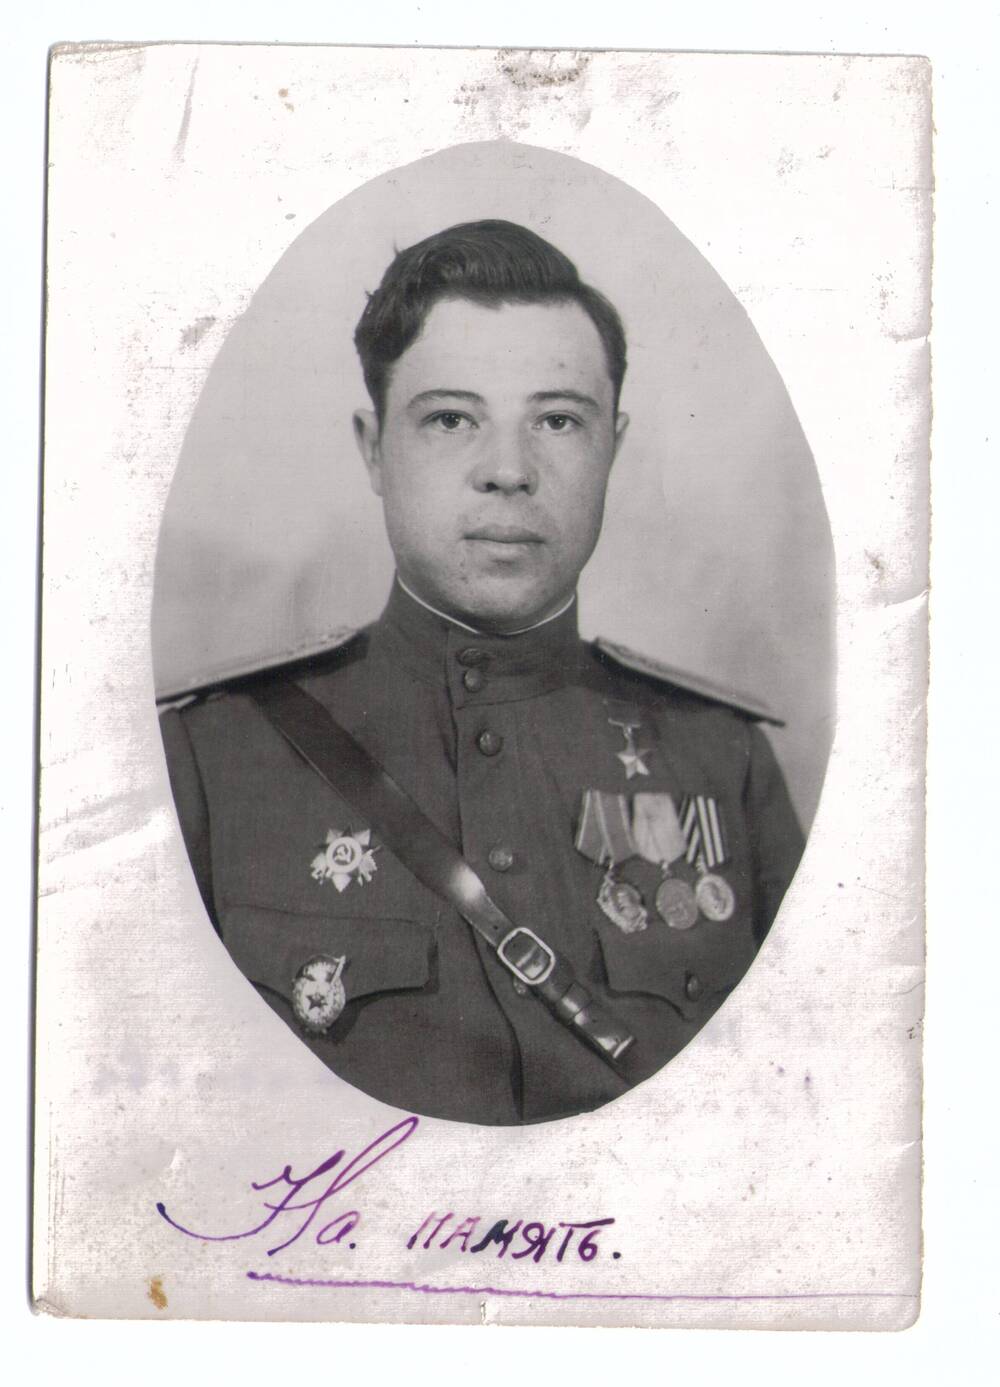 Фотография.
Сорокин Борис Григорьевич, участник Великой 
Отечественной войны, герой Советского Союза